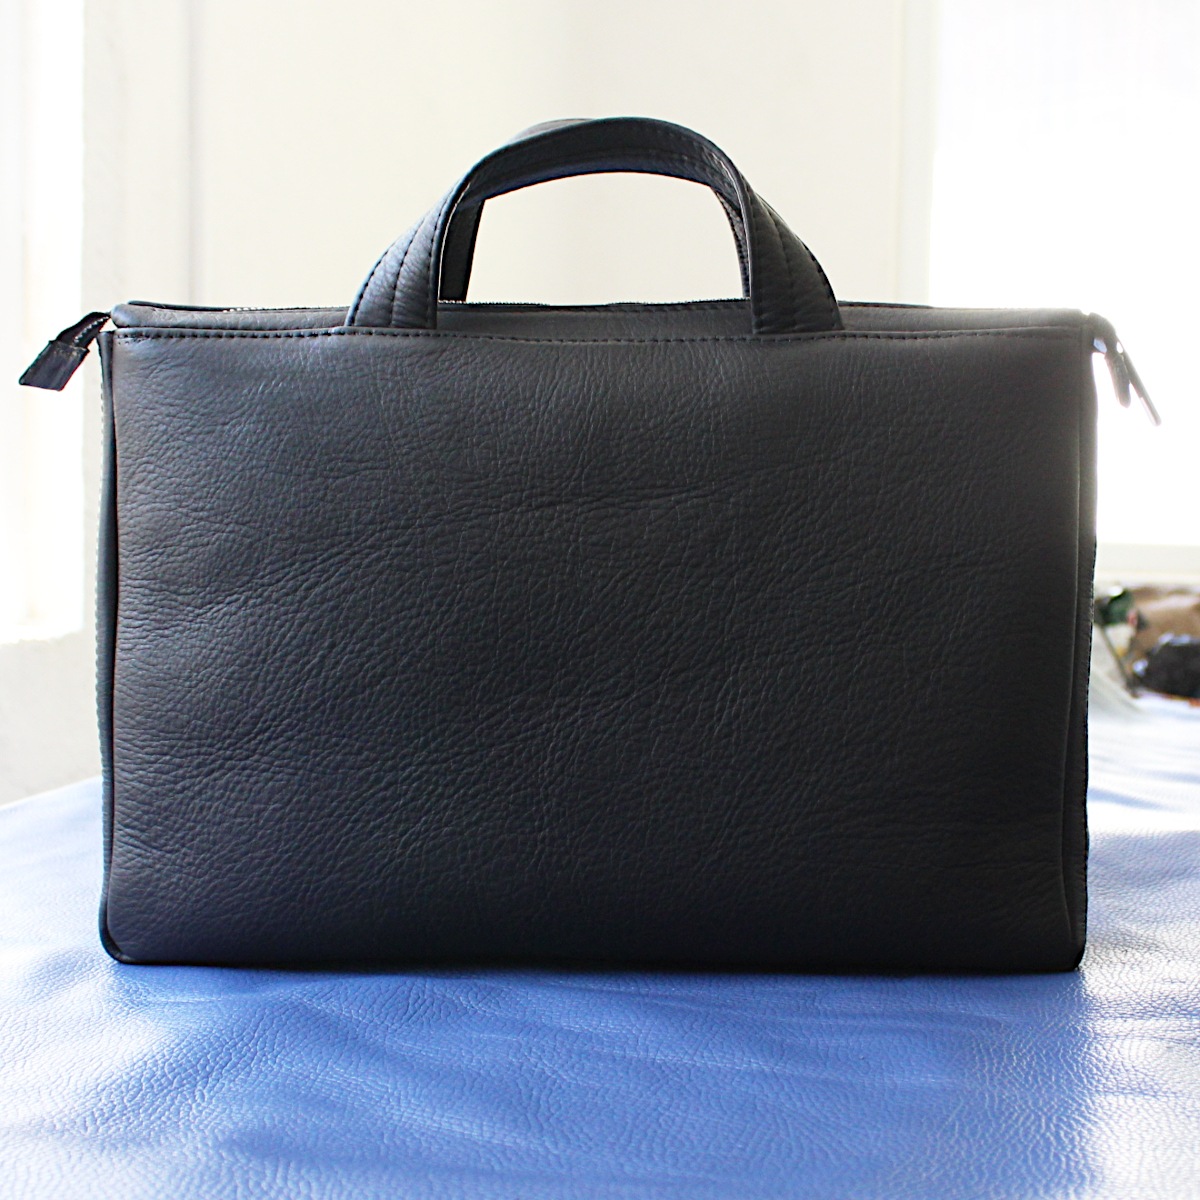 ръчно изработена черна мъжка бизнес чанта от естествена кожа отзад